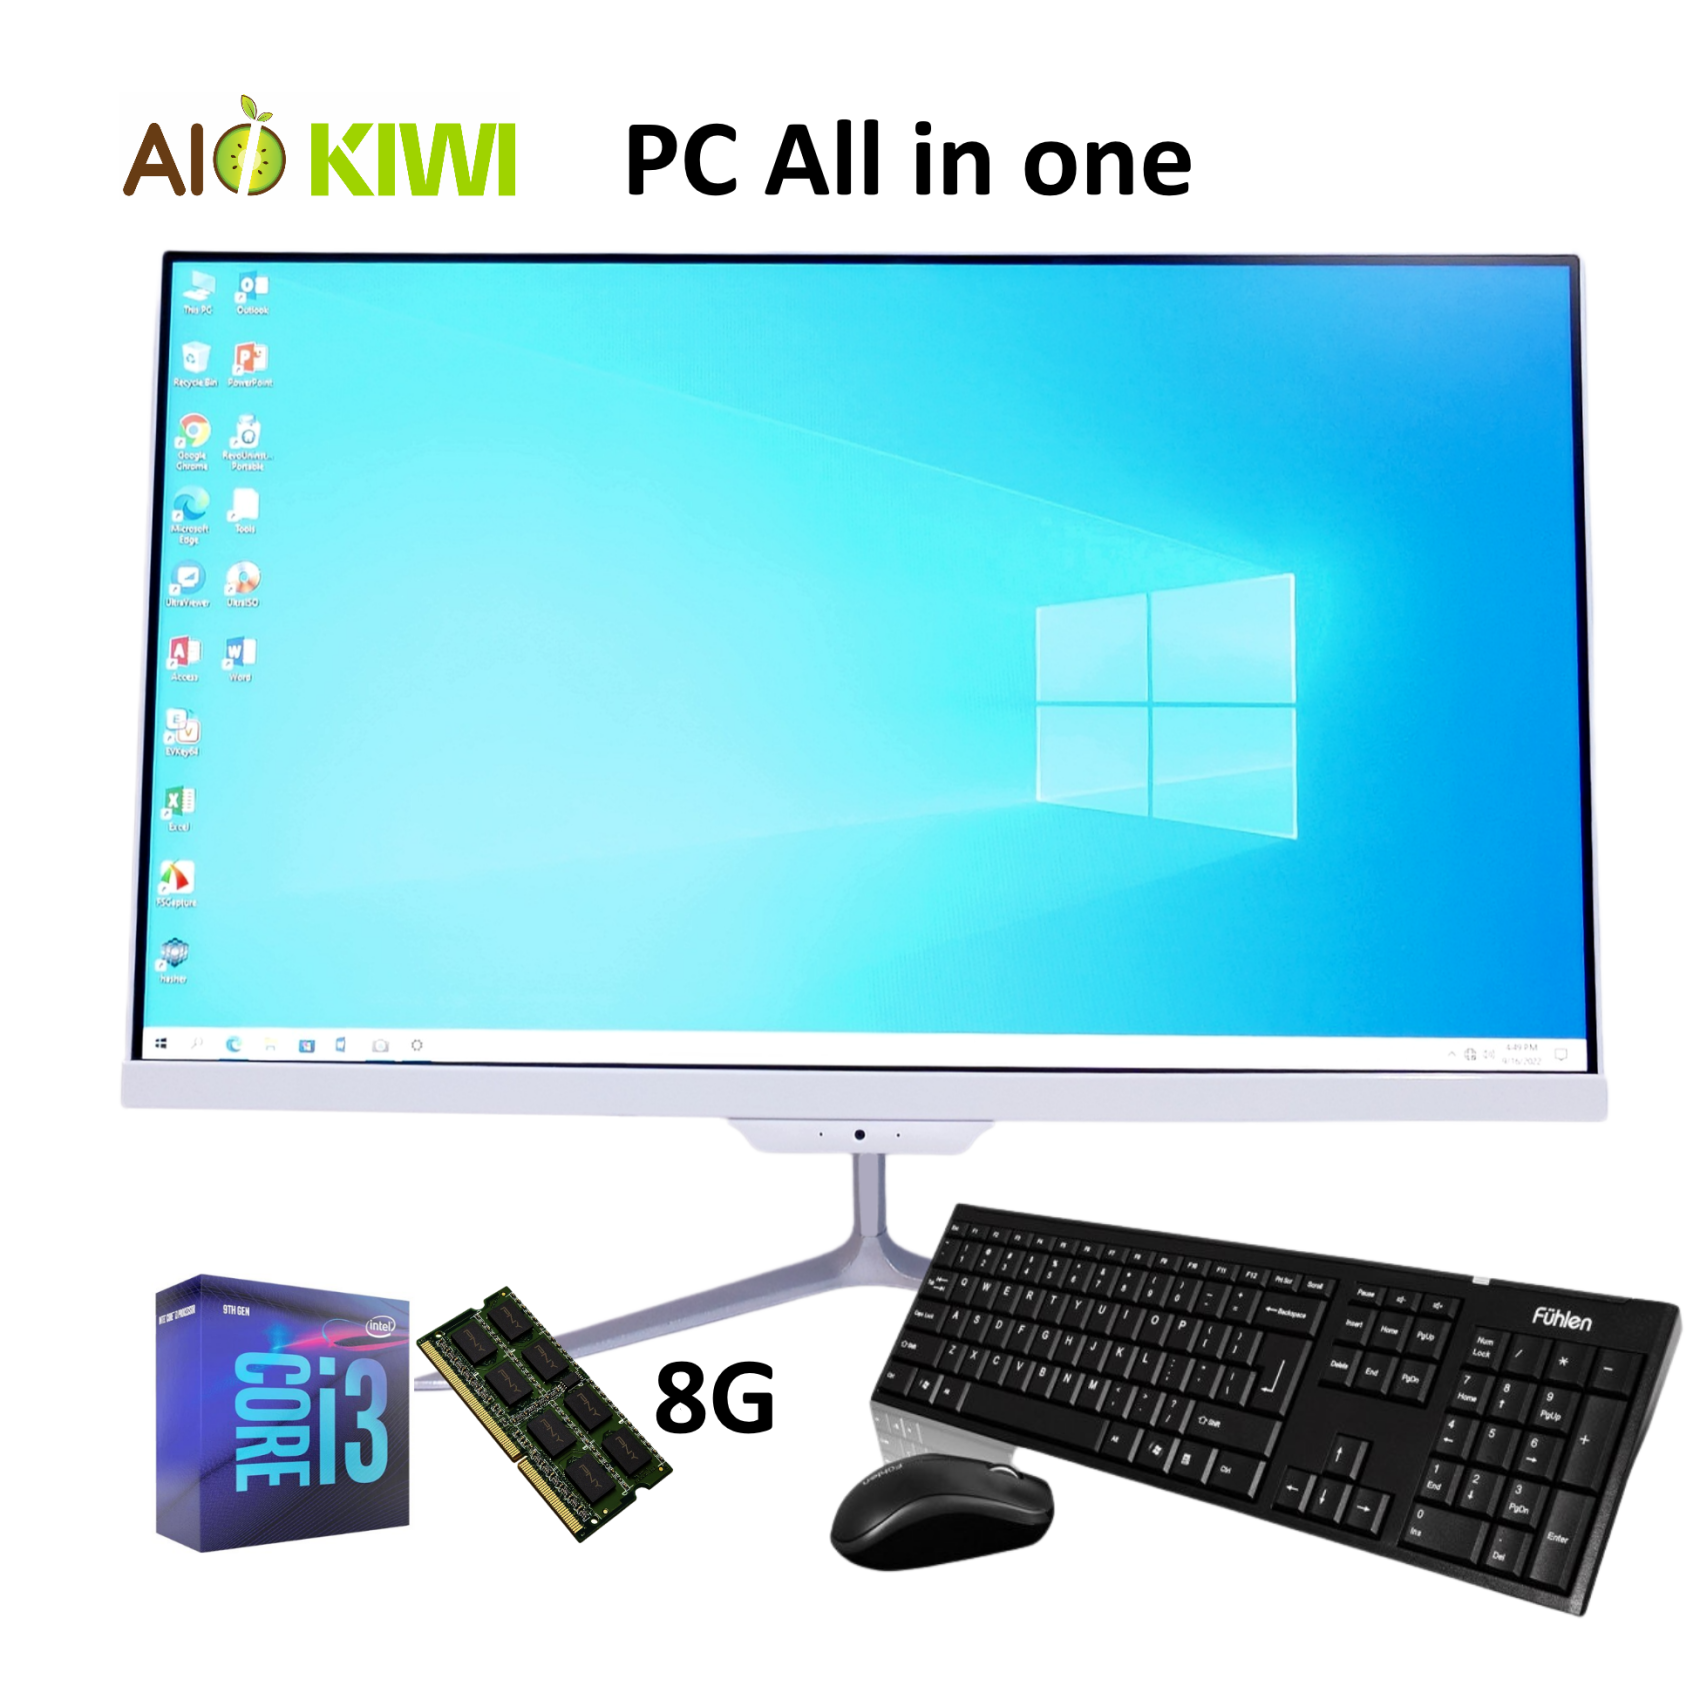 Máy tính PC All in one, AIO KIWI 19P (Core i3 3220, Ram 8G, SSD 240G, 19 inch), máy tính trong màn hình.